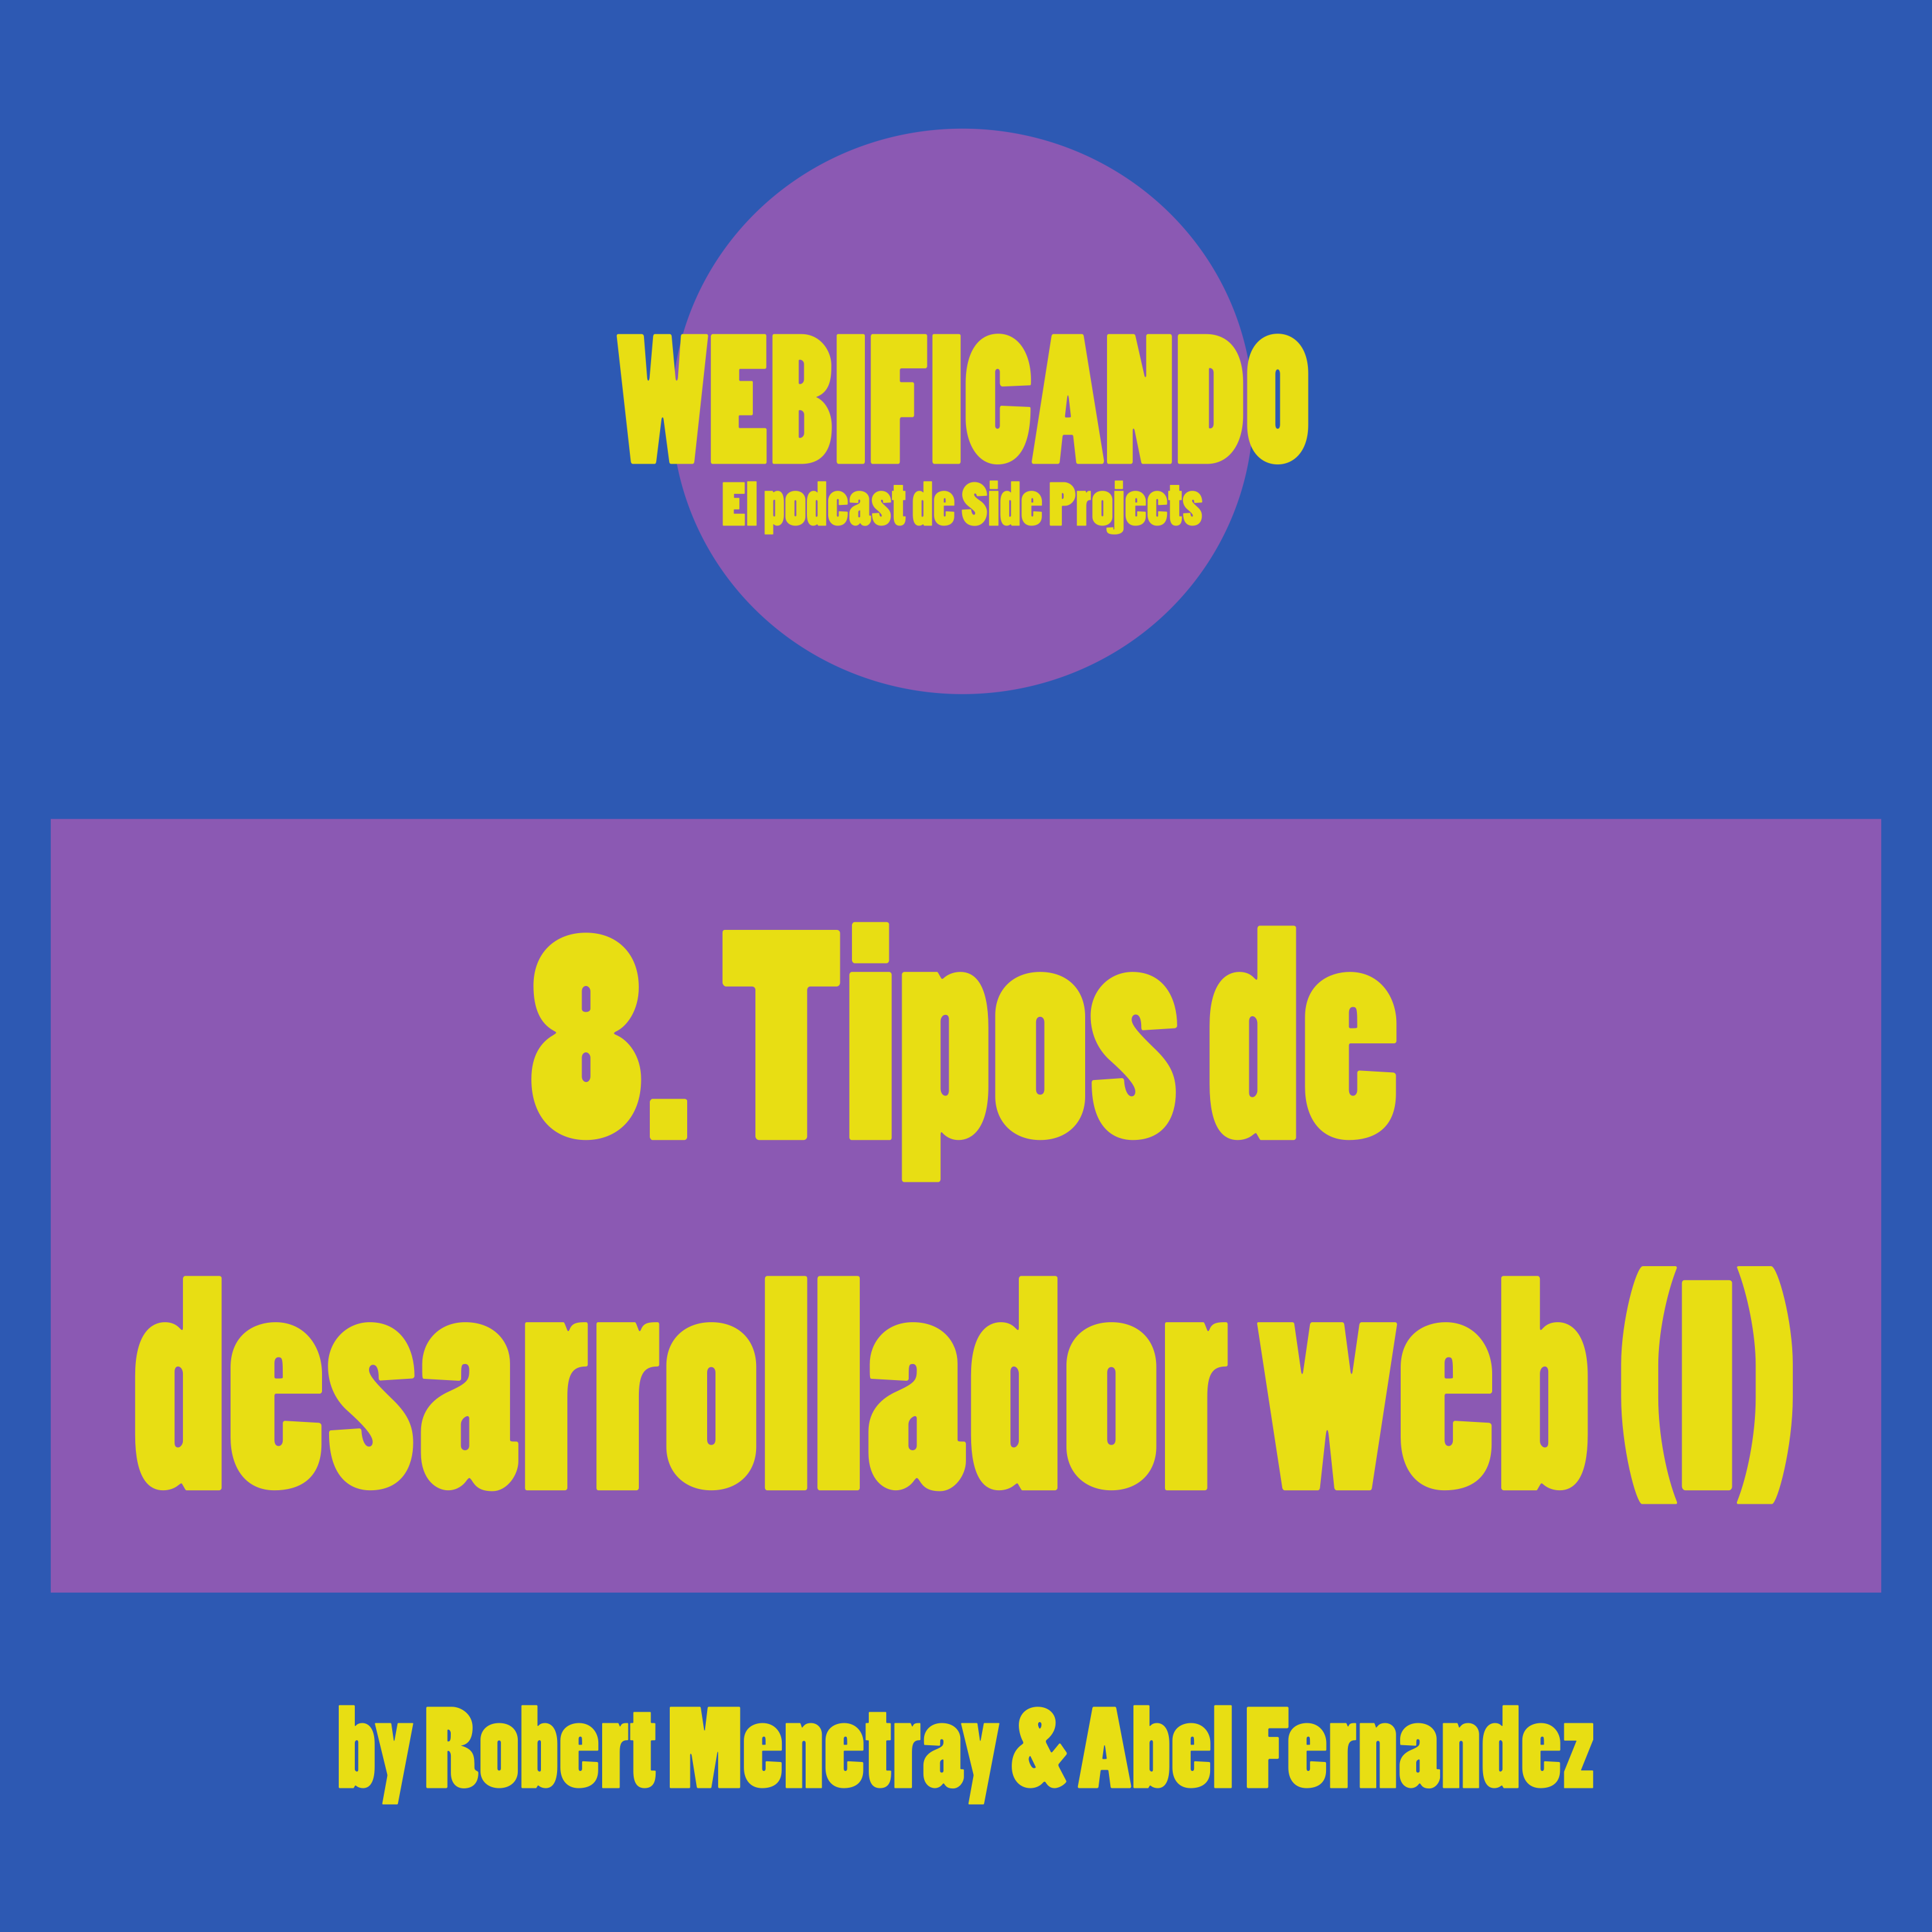 8. Tipos de desarrollador web (I)